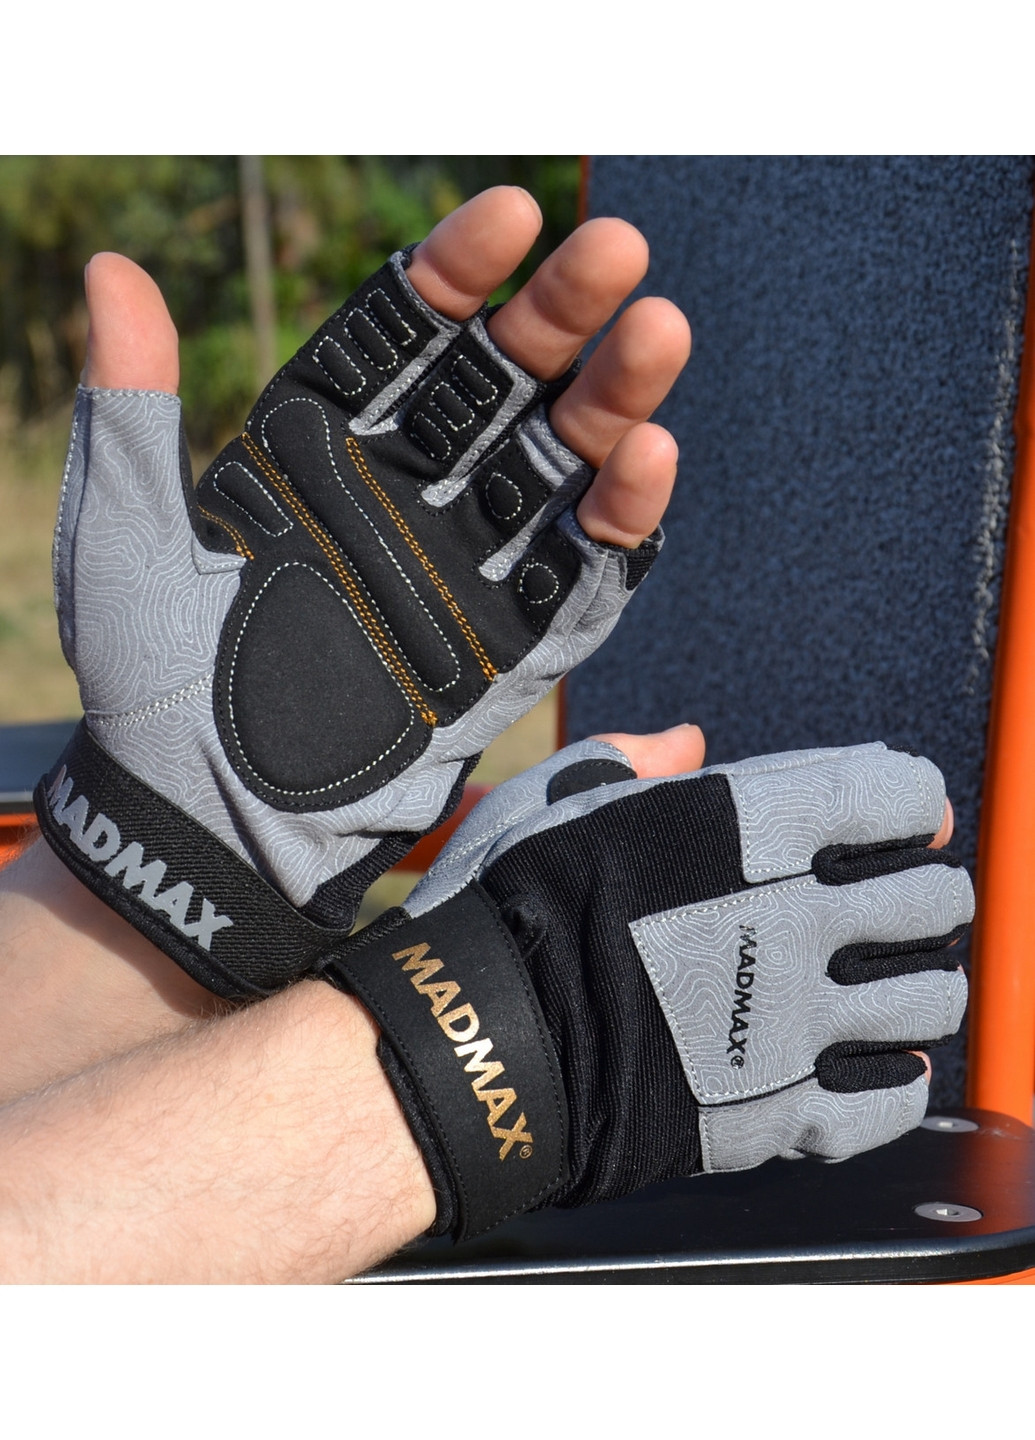 Унисекс перчатки для фитнеса S Mad Max (267655619)